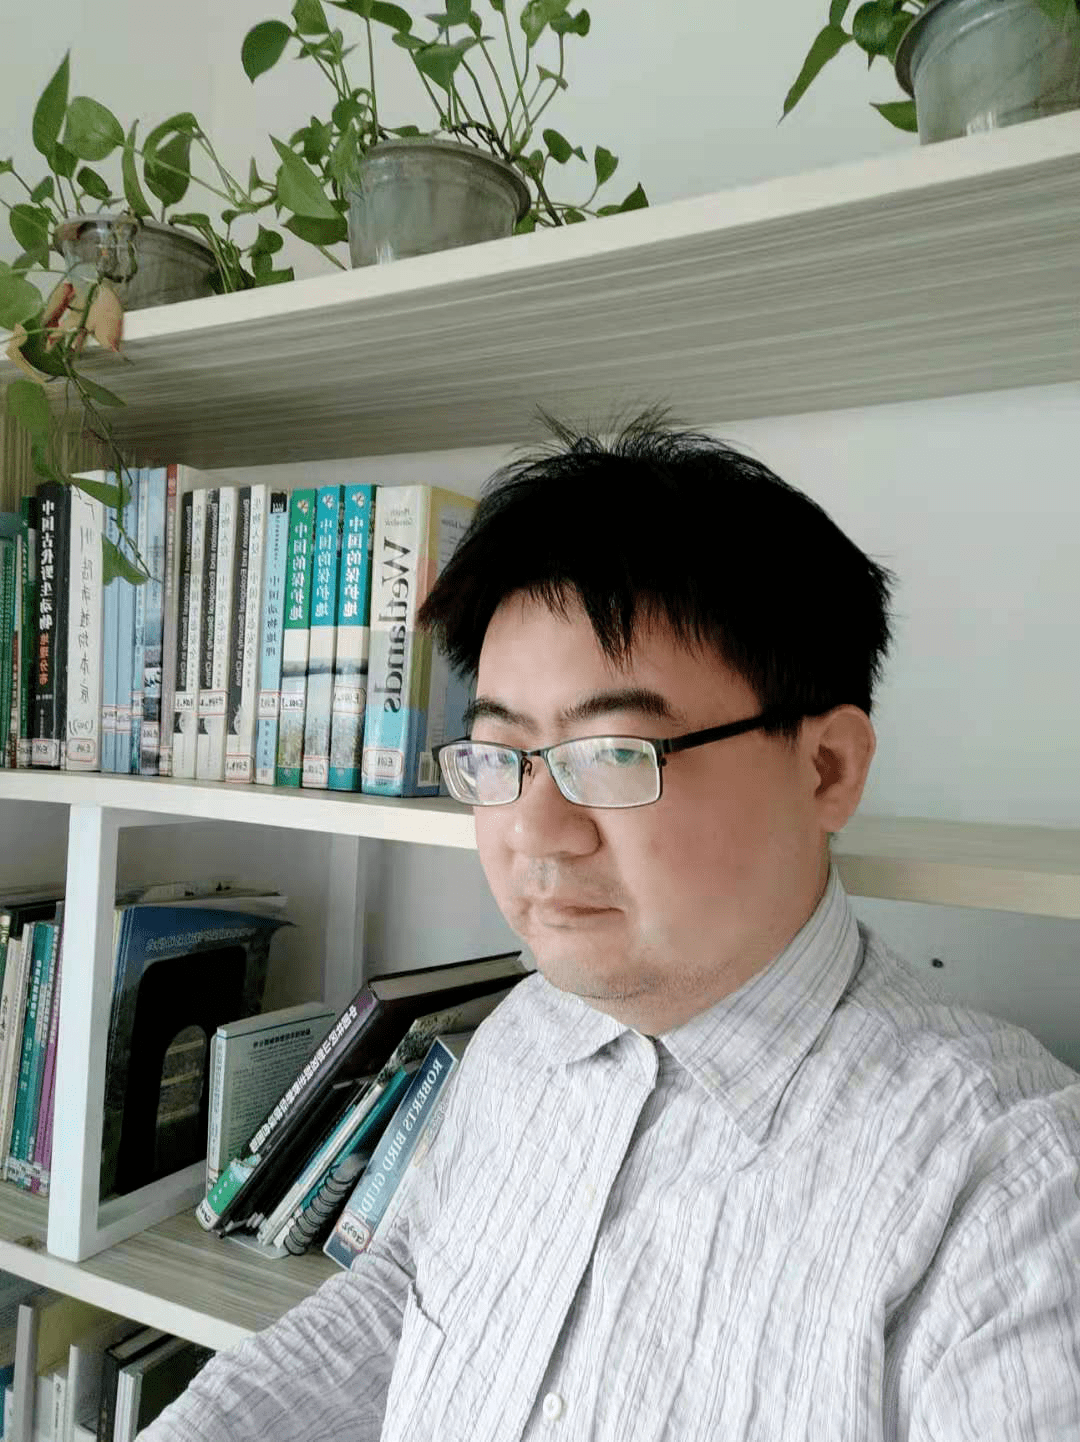 陆春明,复旦大学植物学博士,曾任职于云南农业大学,从事生物多样性